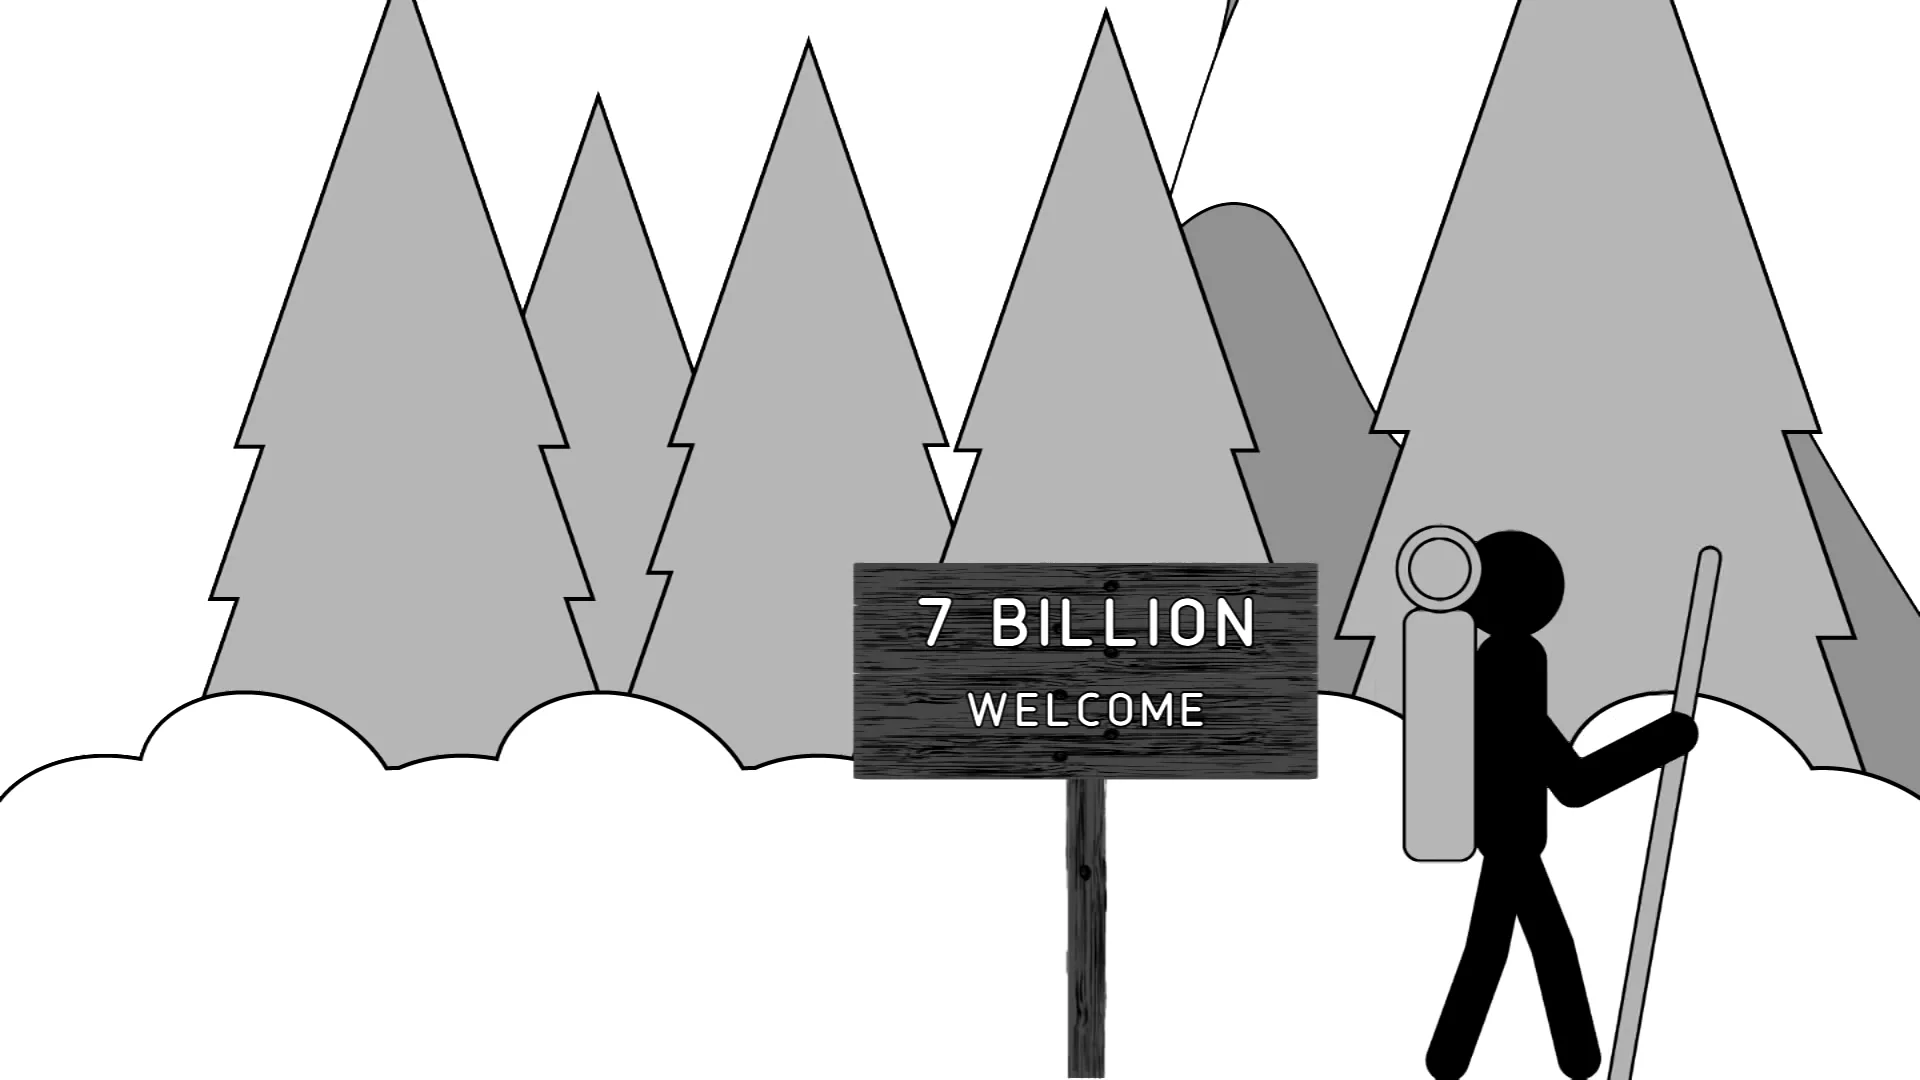 1 billion people. 7 Billion people.